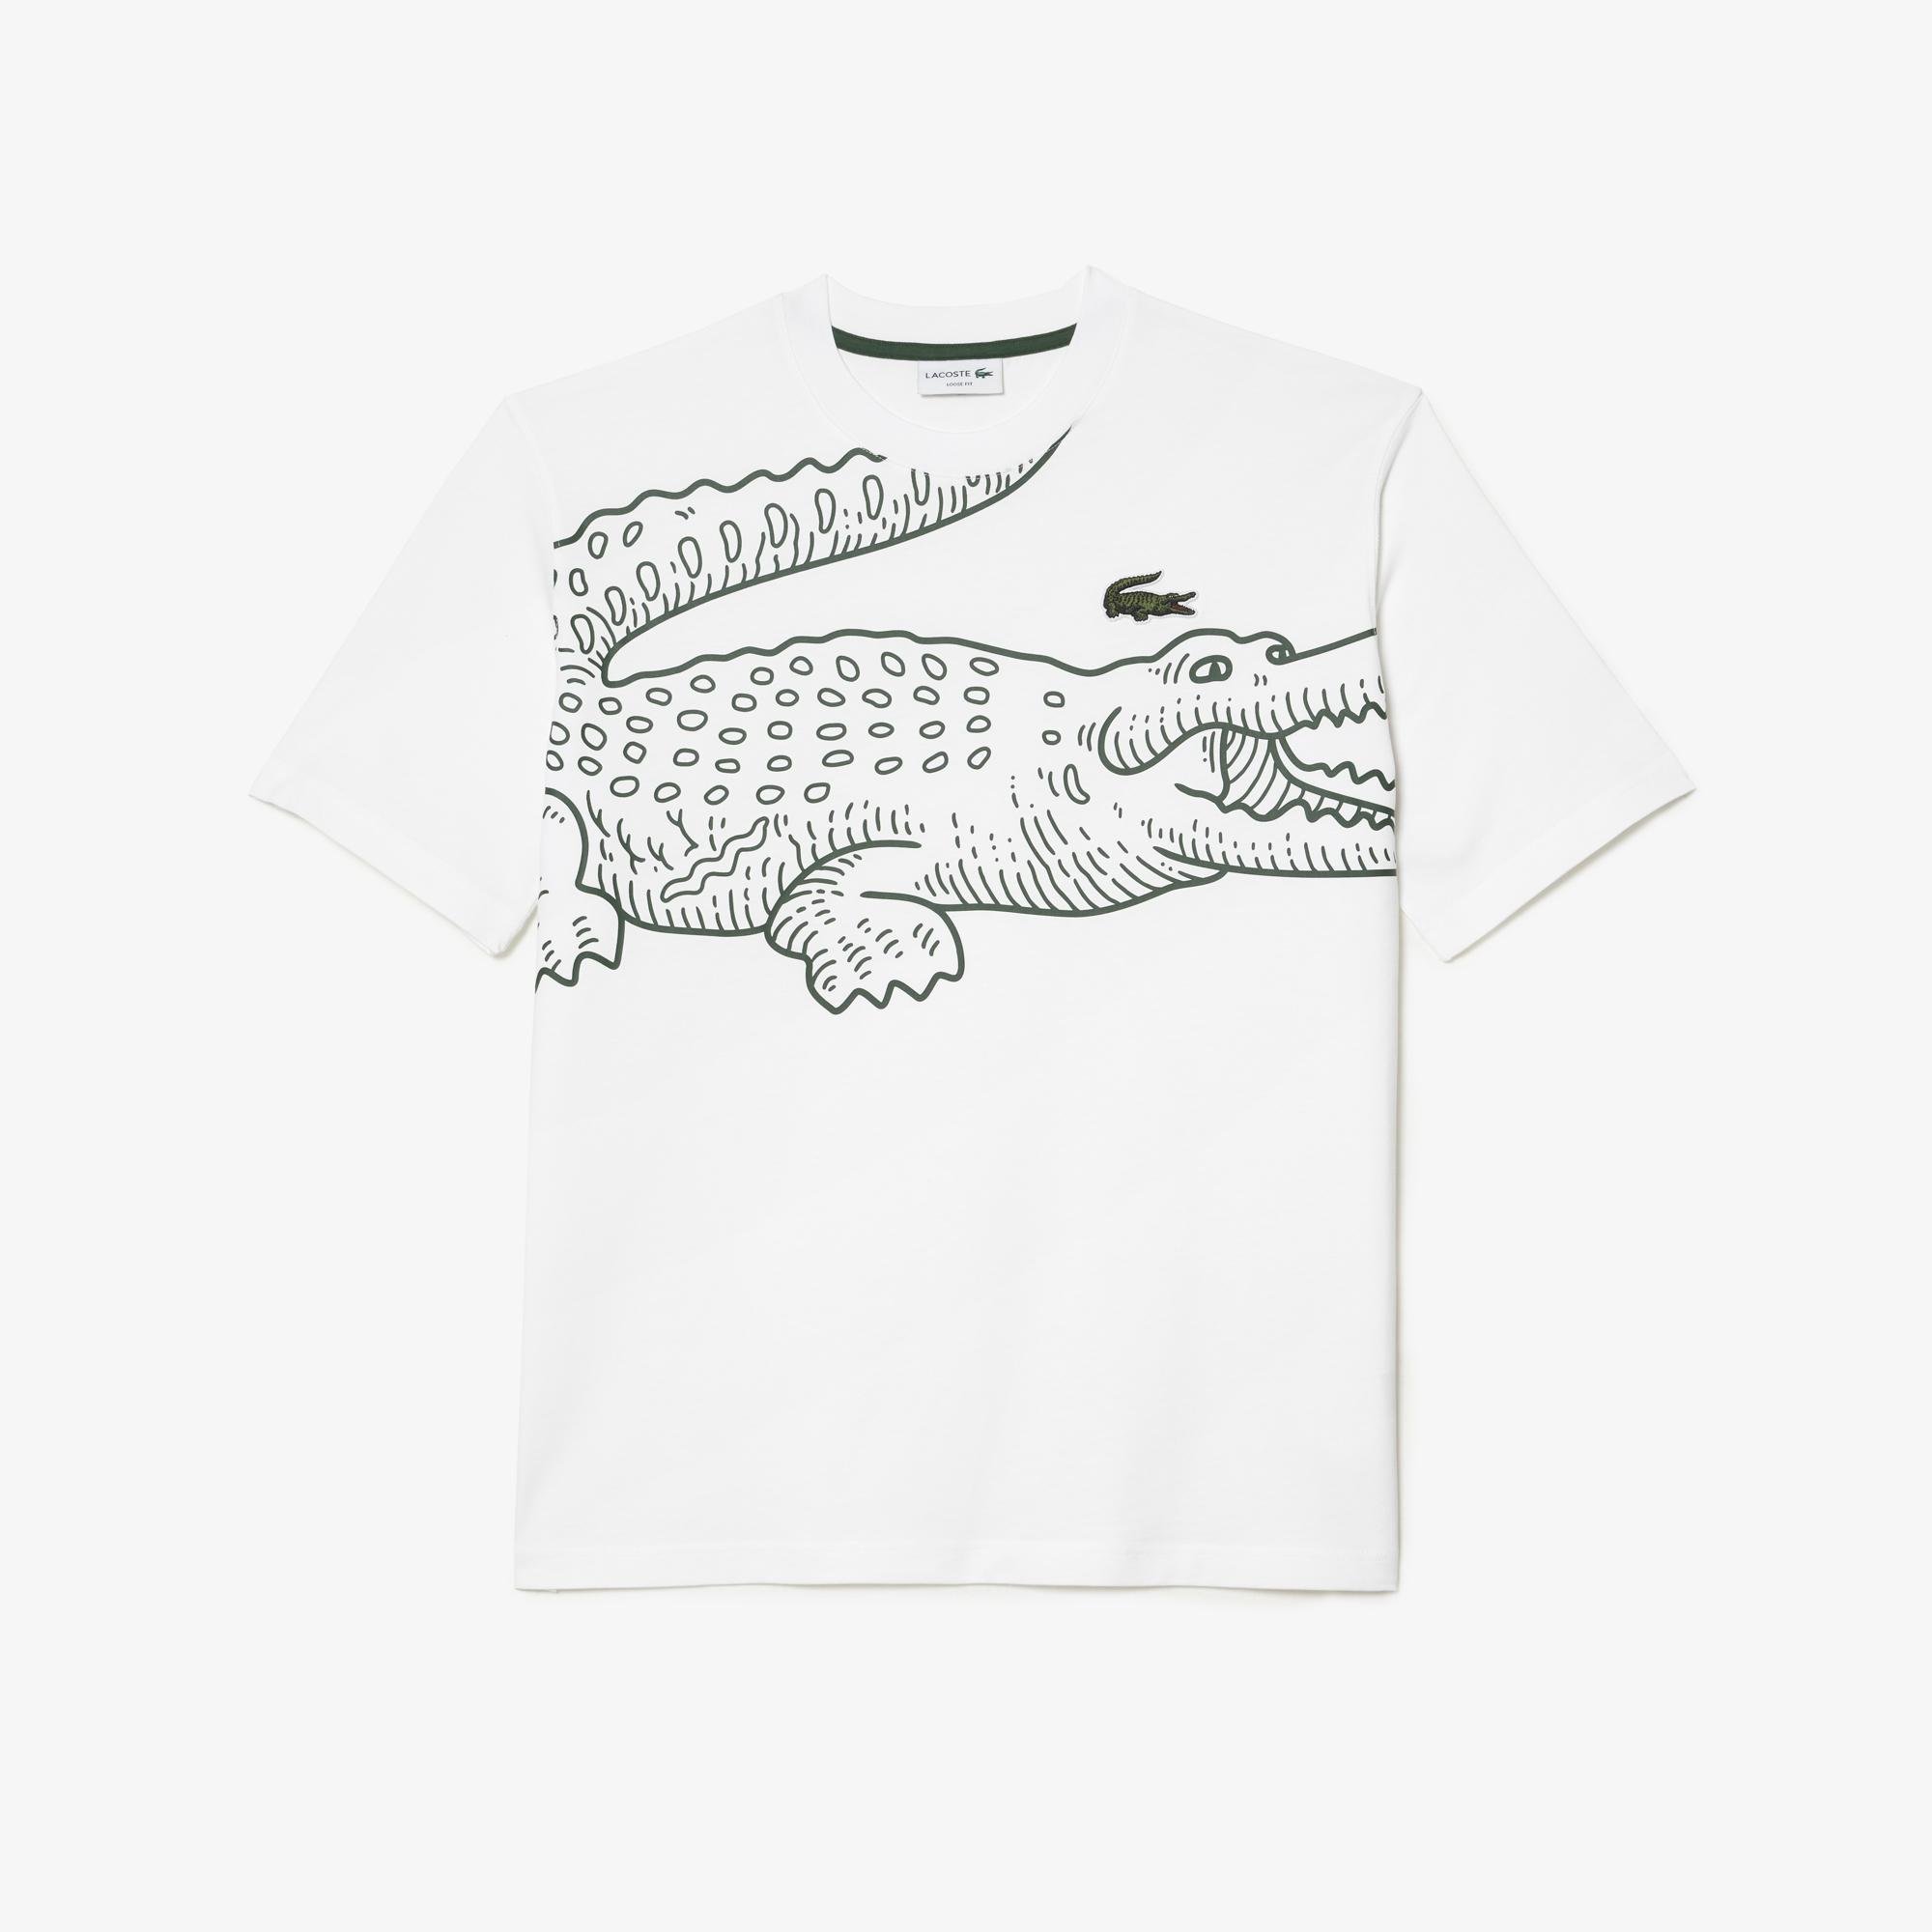 Lacoste pánske tričko s okrúhlym výstrihom, voľným strihom s krokodílou potlačou